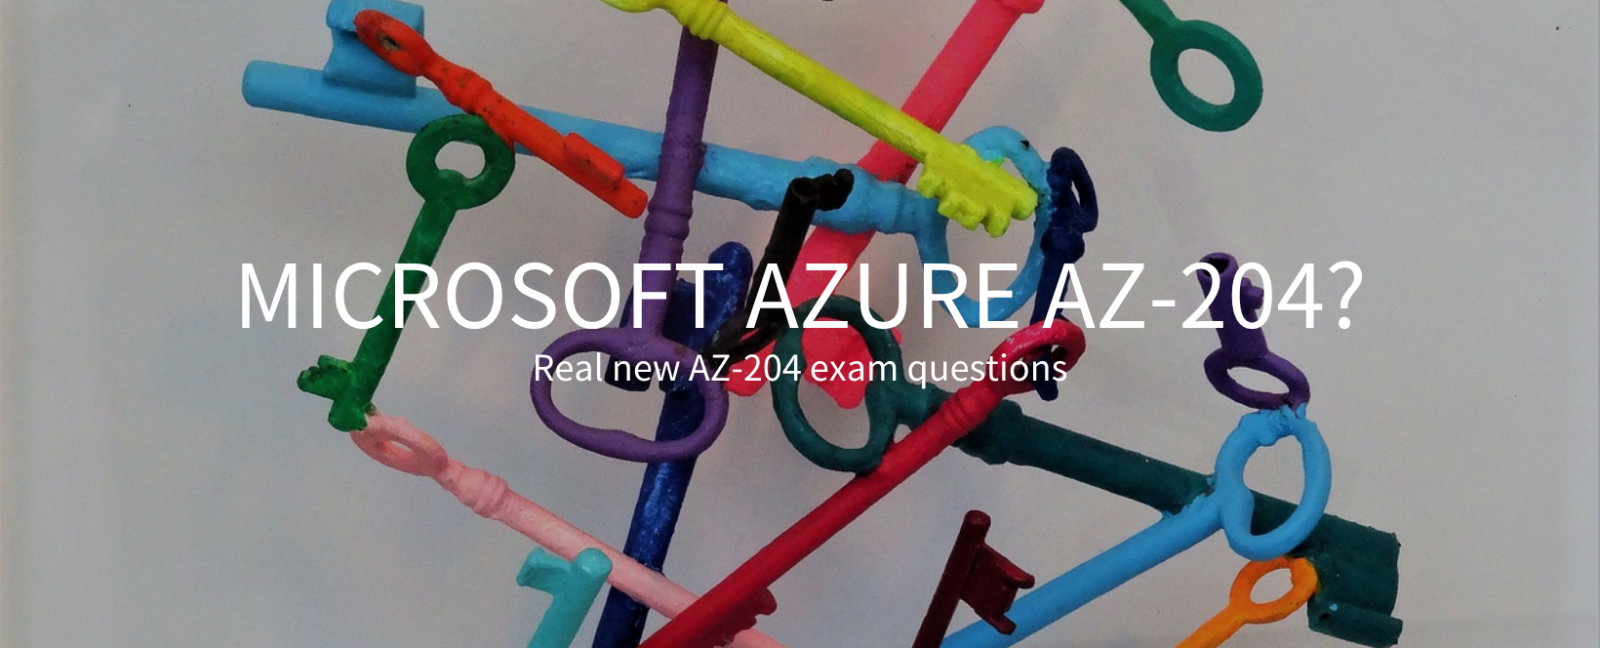 Real new AZ-204 exam questions